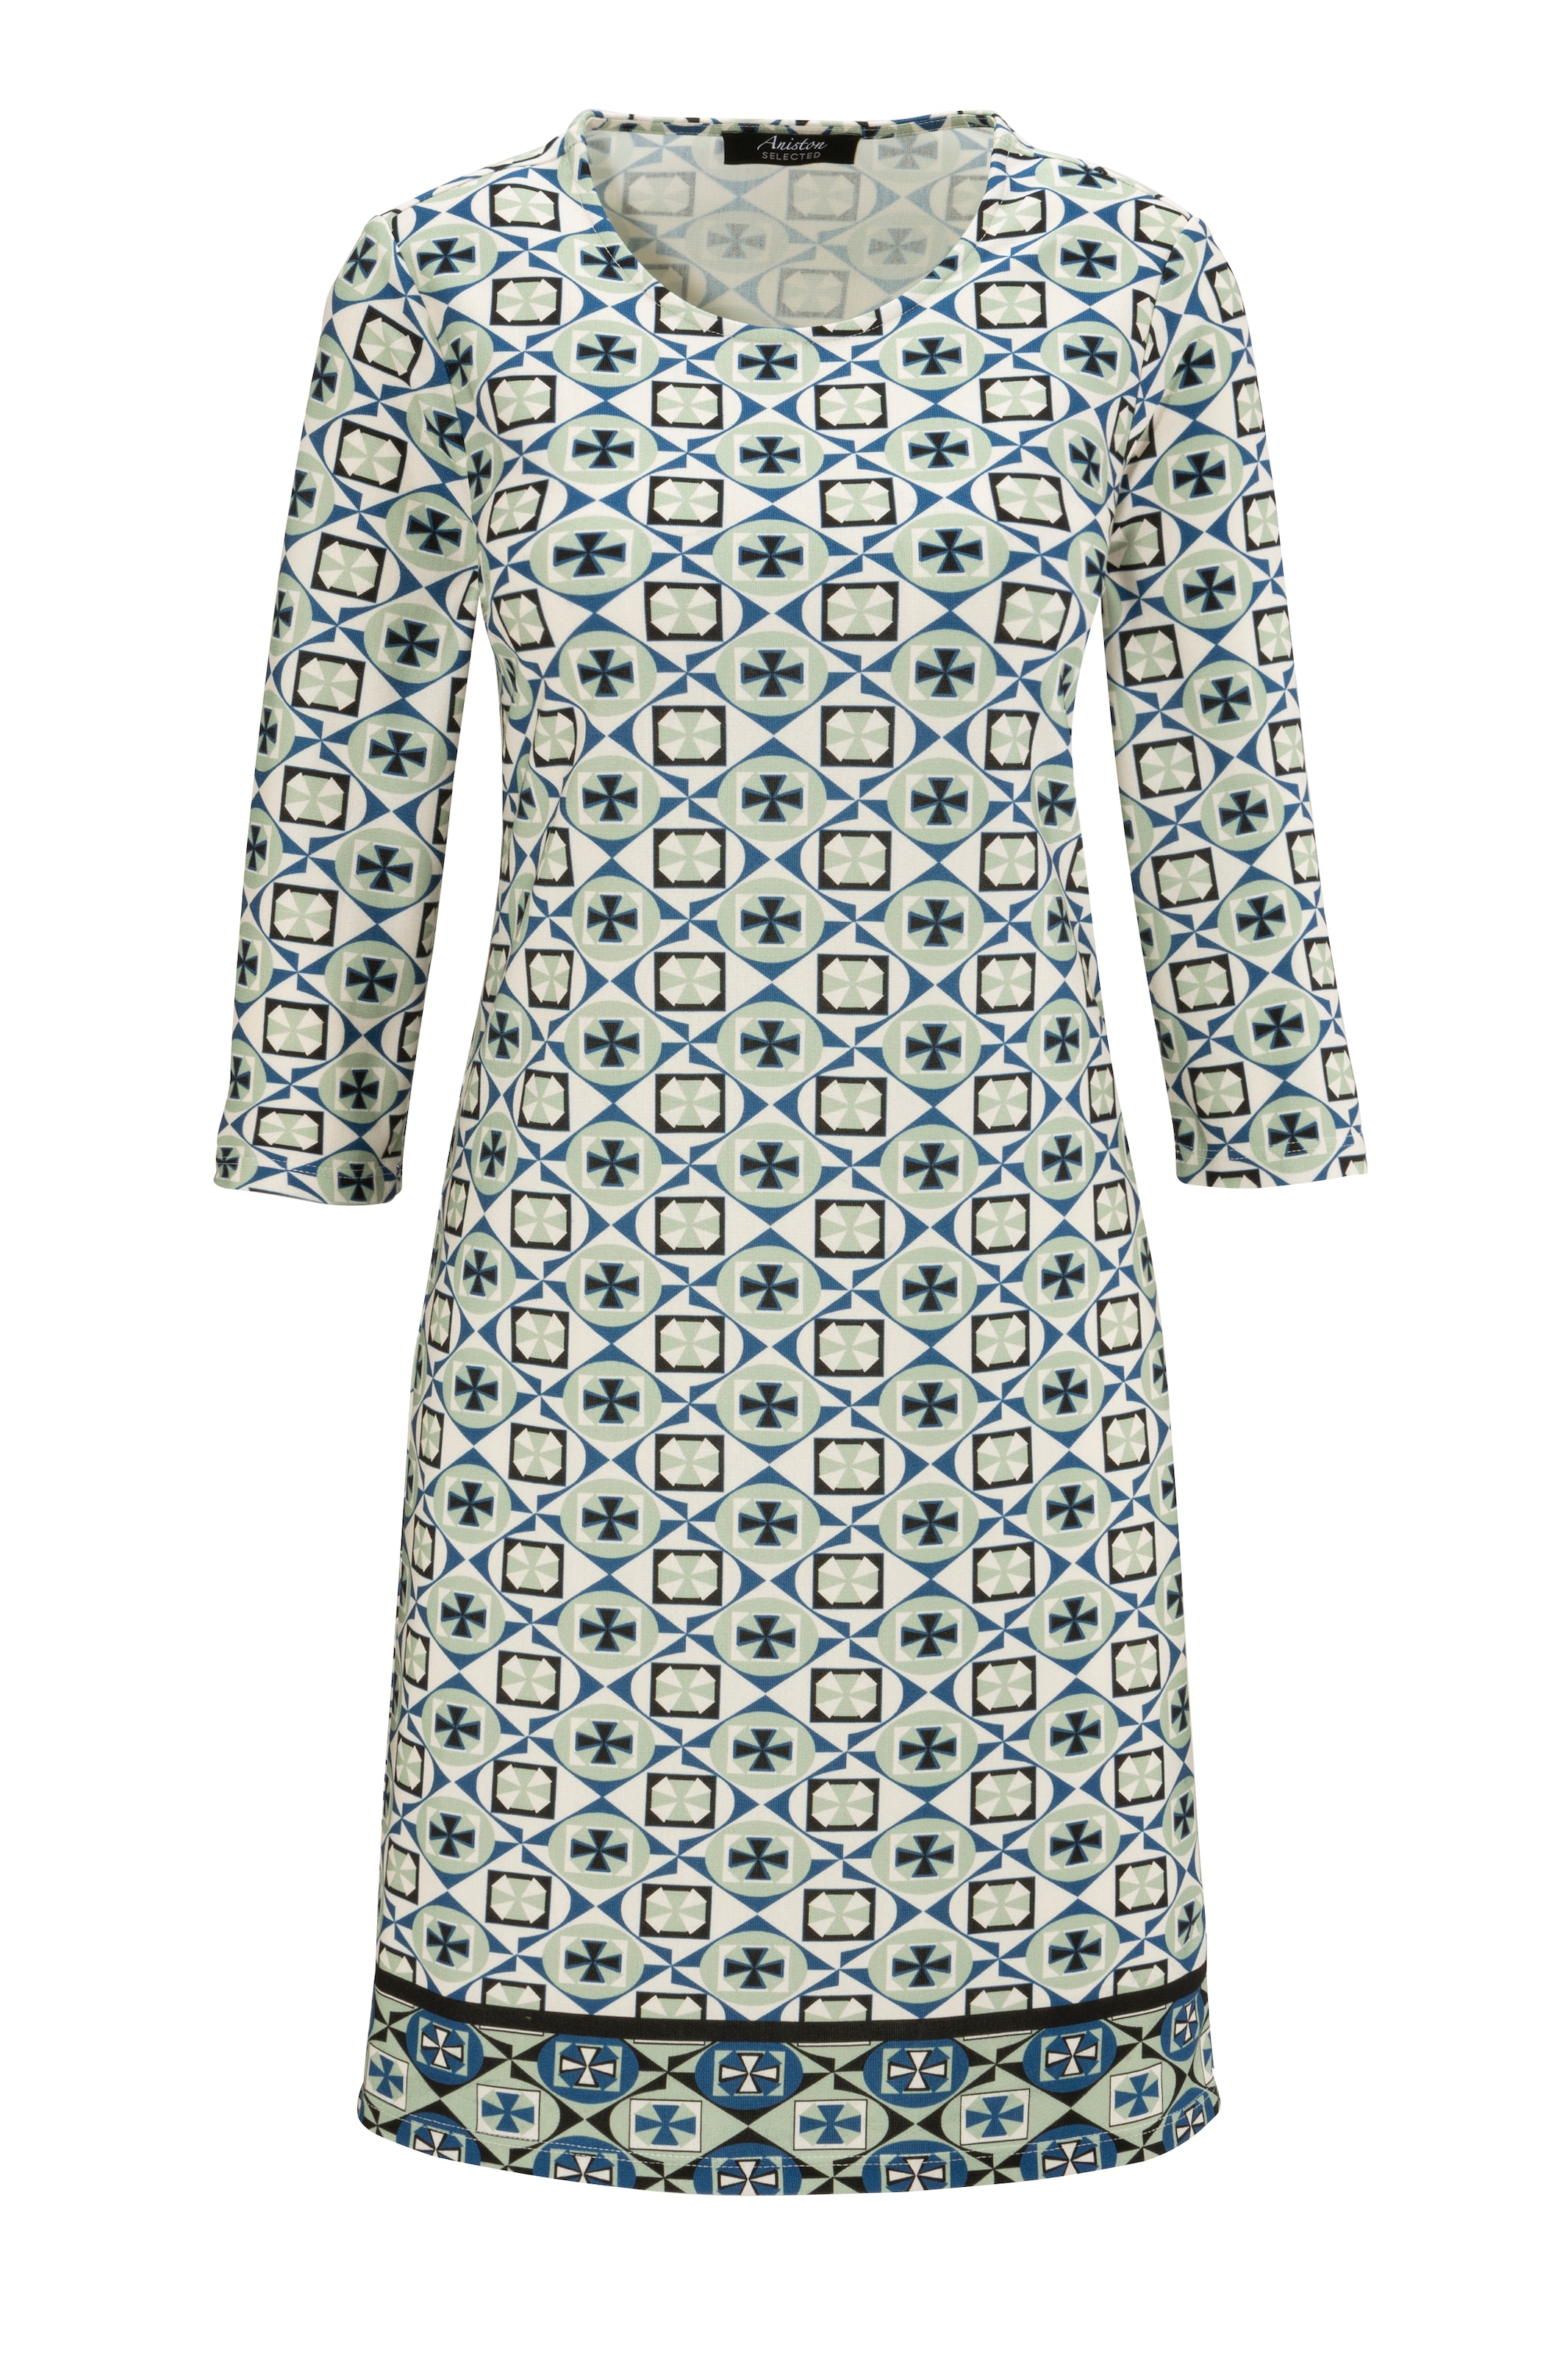 Aniston SELECTED Jerseykleid, mit geometrischem Muster und aufgedruckter Bordüre - NEUE KOLLEKTION